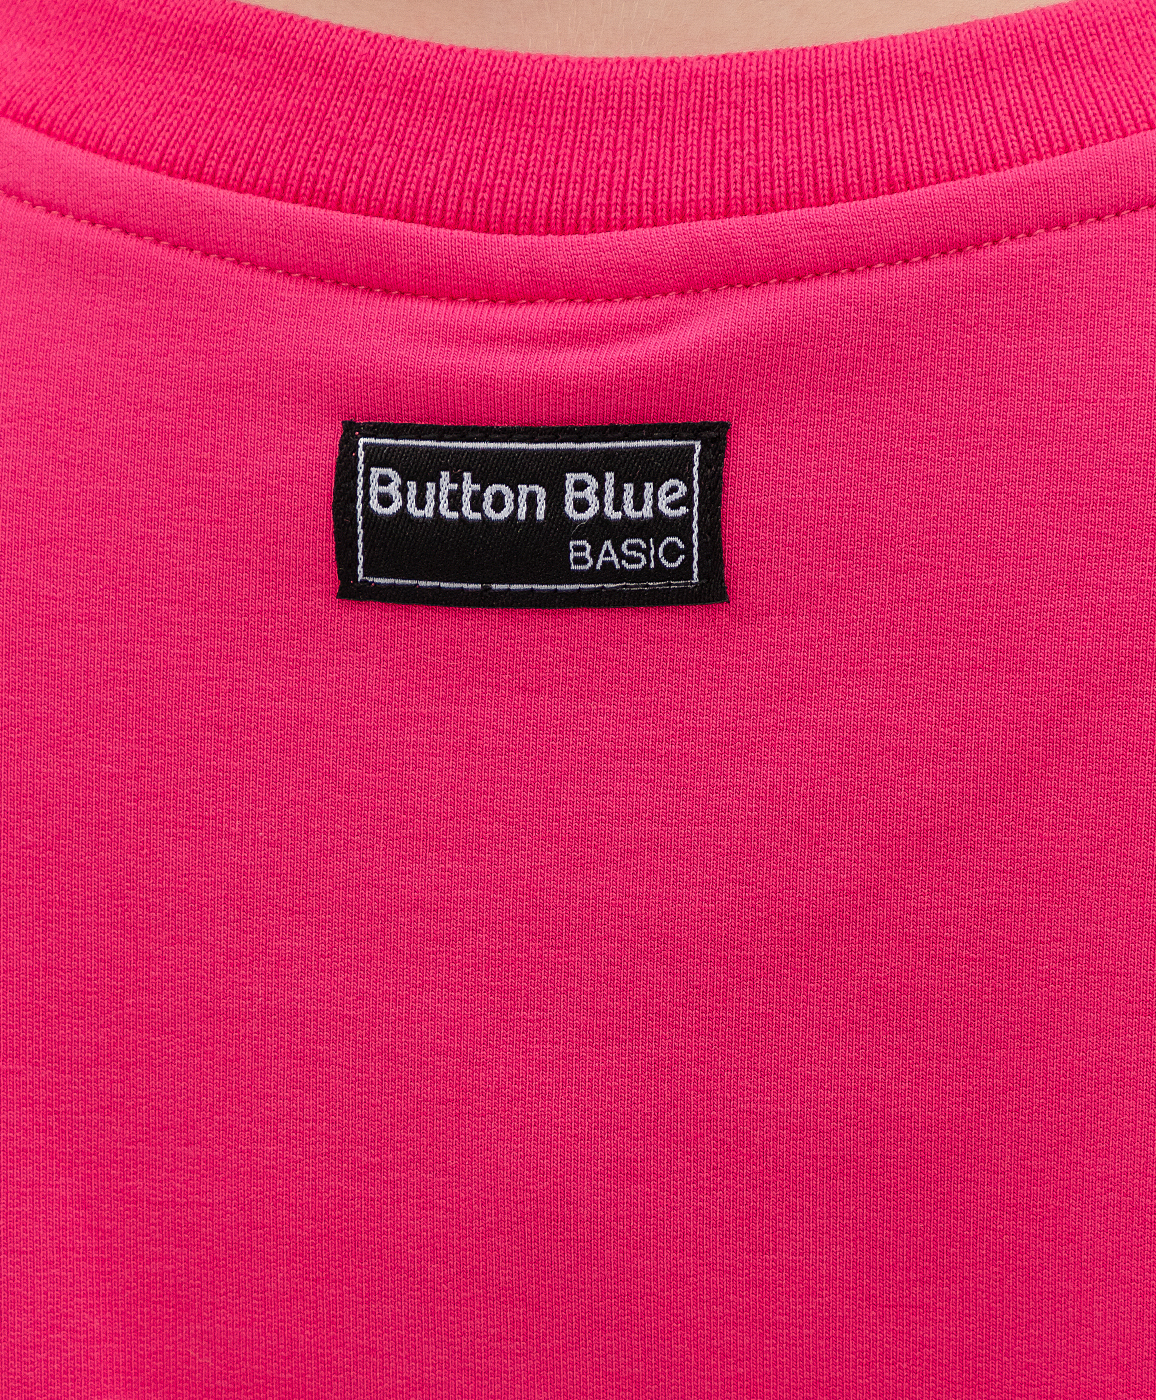 Свитшот Button Blue цвета фуксии 121BBGB16013600, размер 128 - фото 3